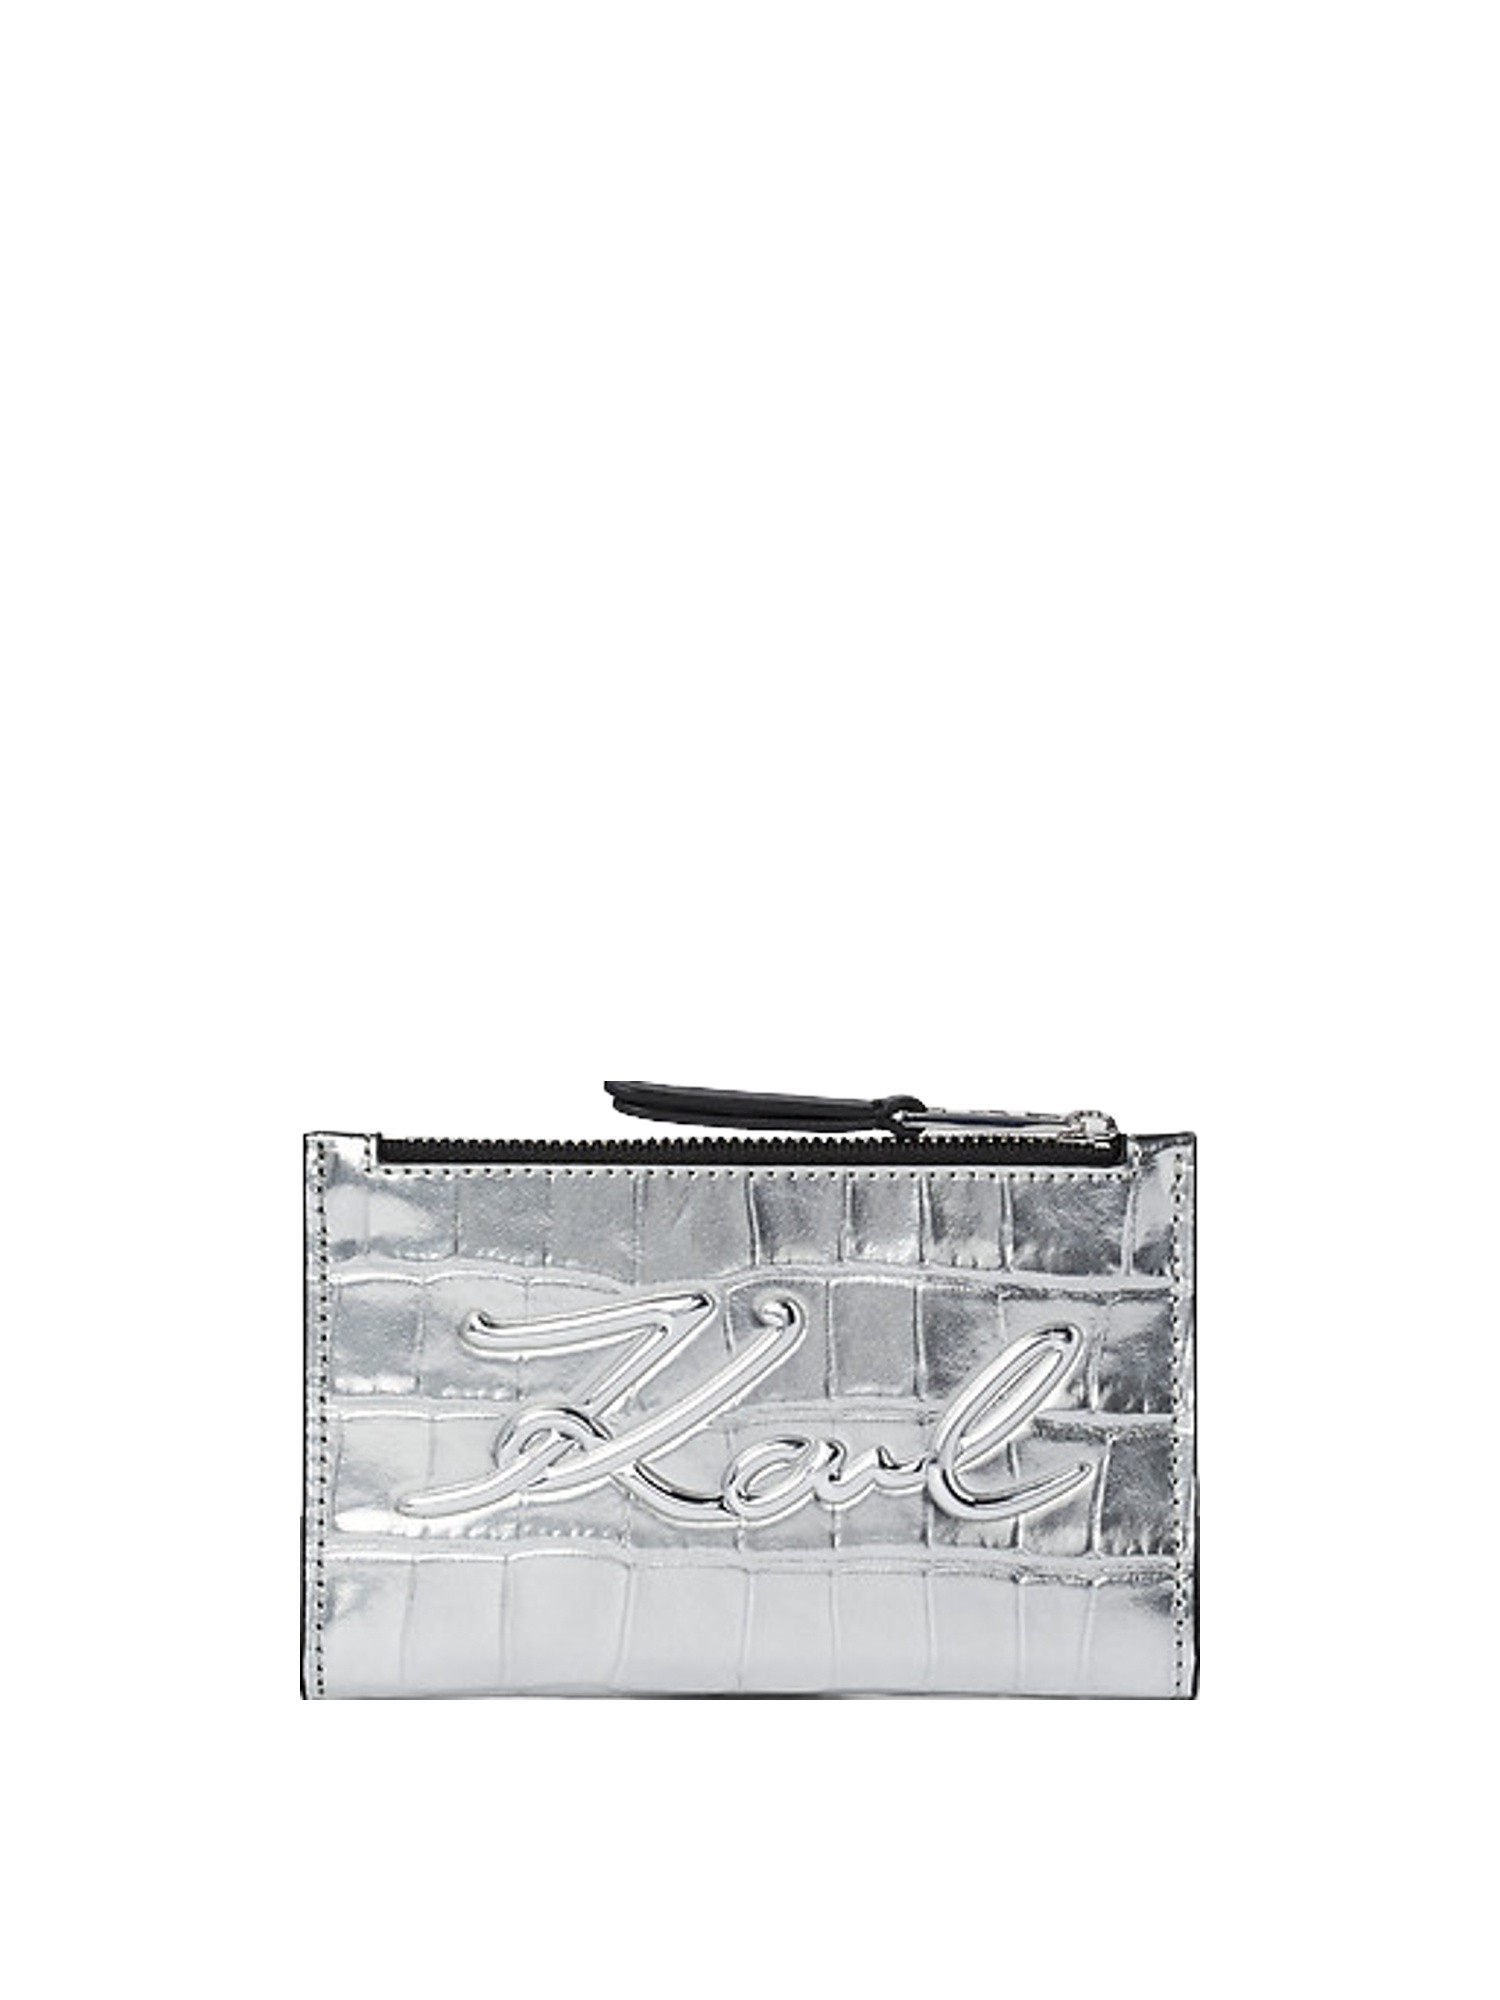 Karl Lagerfeld - K/signature porta carte di credito goffrato effetto coccodrillo con chiusura superiore a zip, Grigio argento, large image number 0